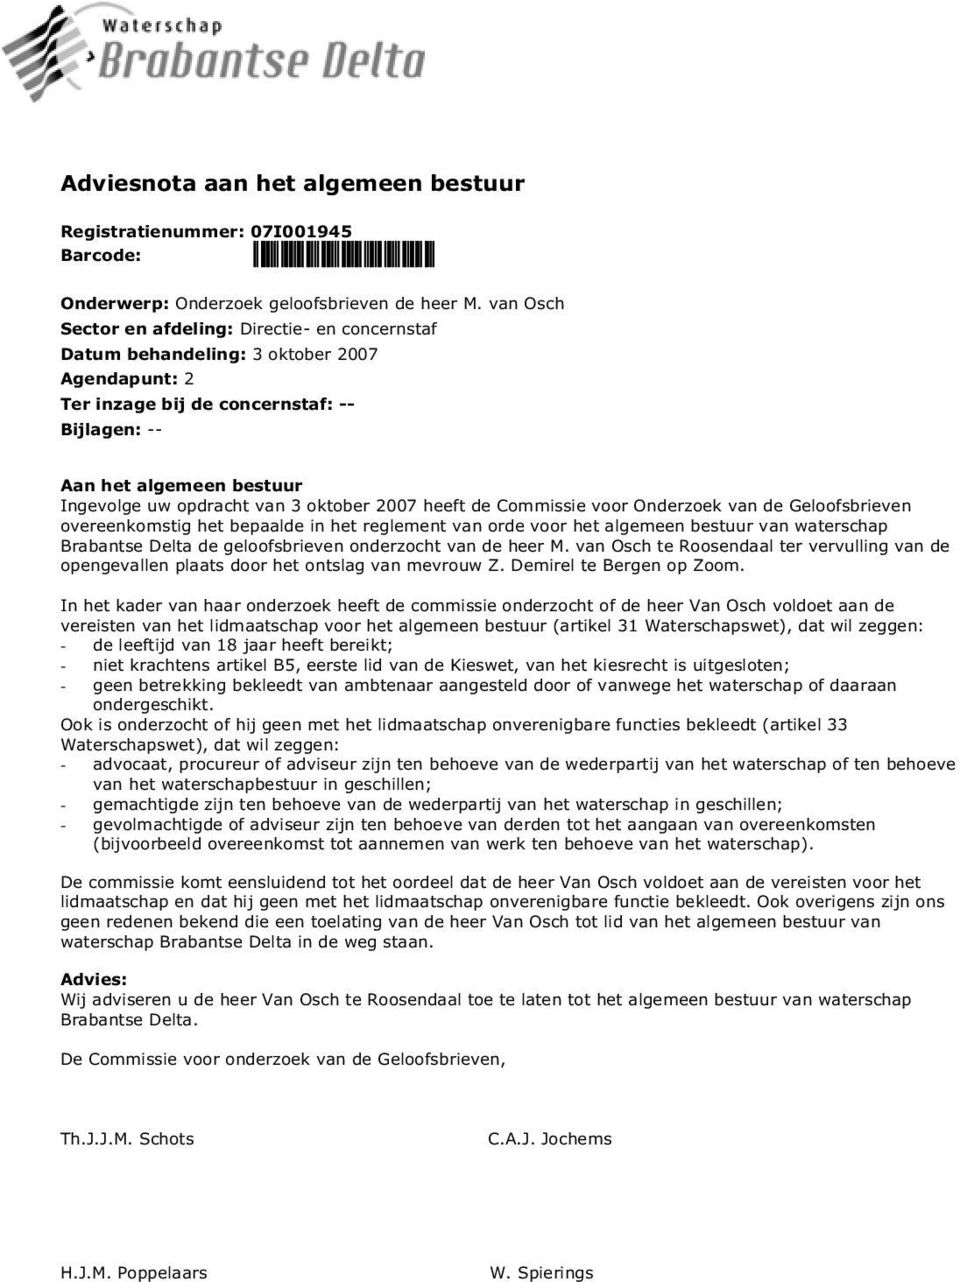 3 oktober 2007 heeft de Commissie voor Onderzoek van de Geloofsbrieven overeenkomstig het bepaalde in het reglement van orde voor het algemeen bestuur van waterschap Brabantse Delta de geloofsbrieven